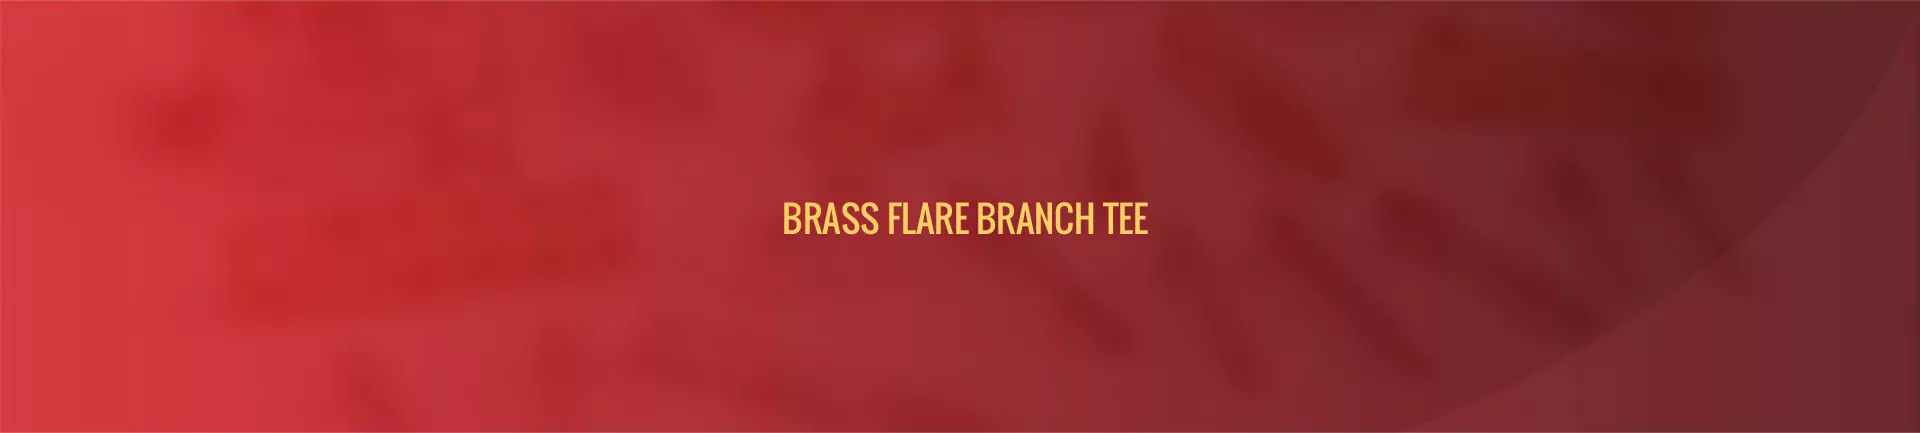 brass_flare_branch_tee-banner